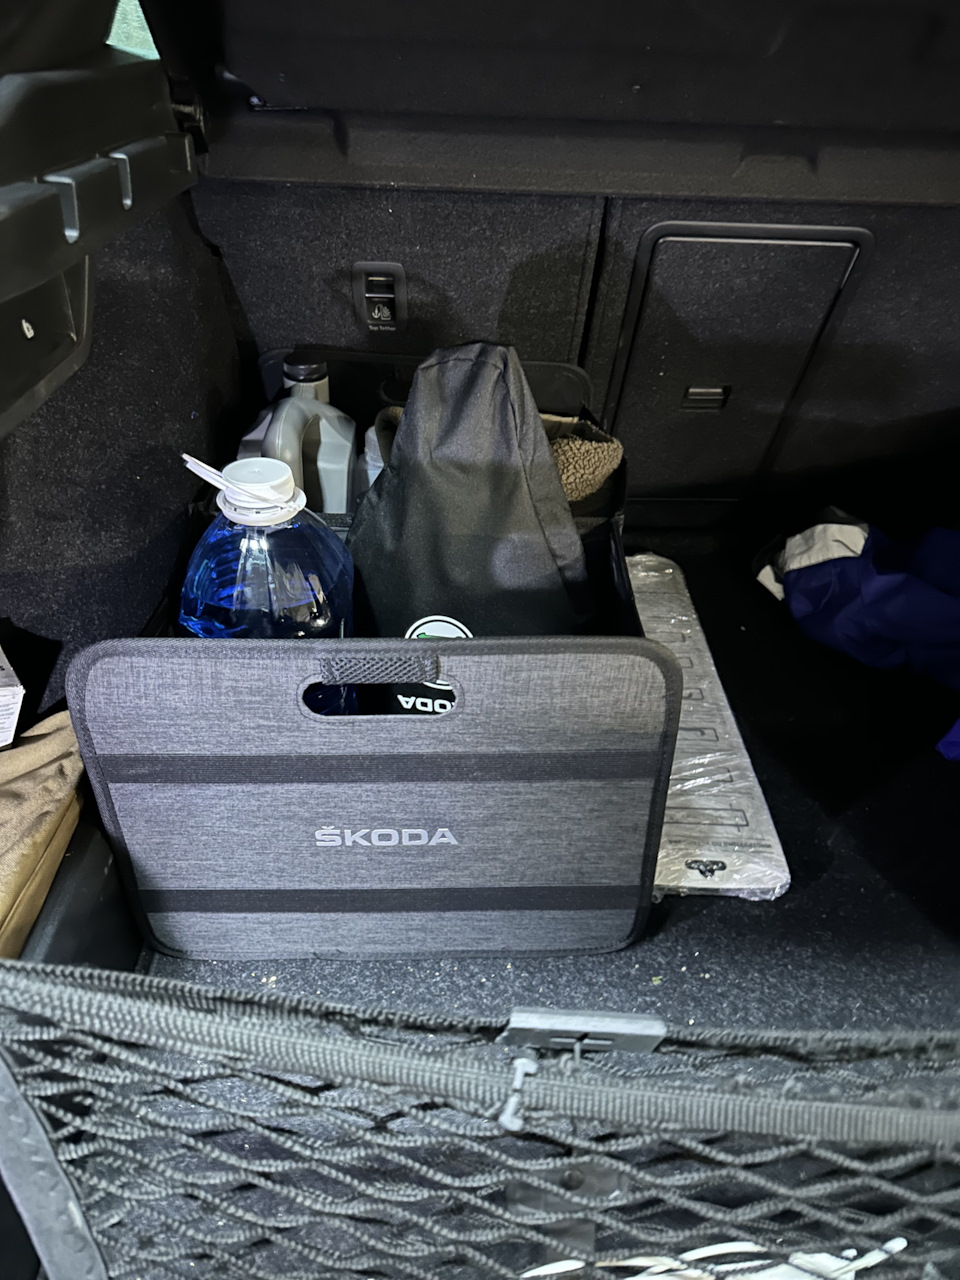 Регистратор, электронный ароматизатор, и корзина — Skoda Octavia A8 Mk4 .